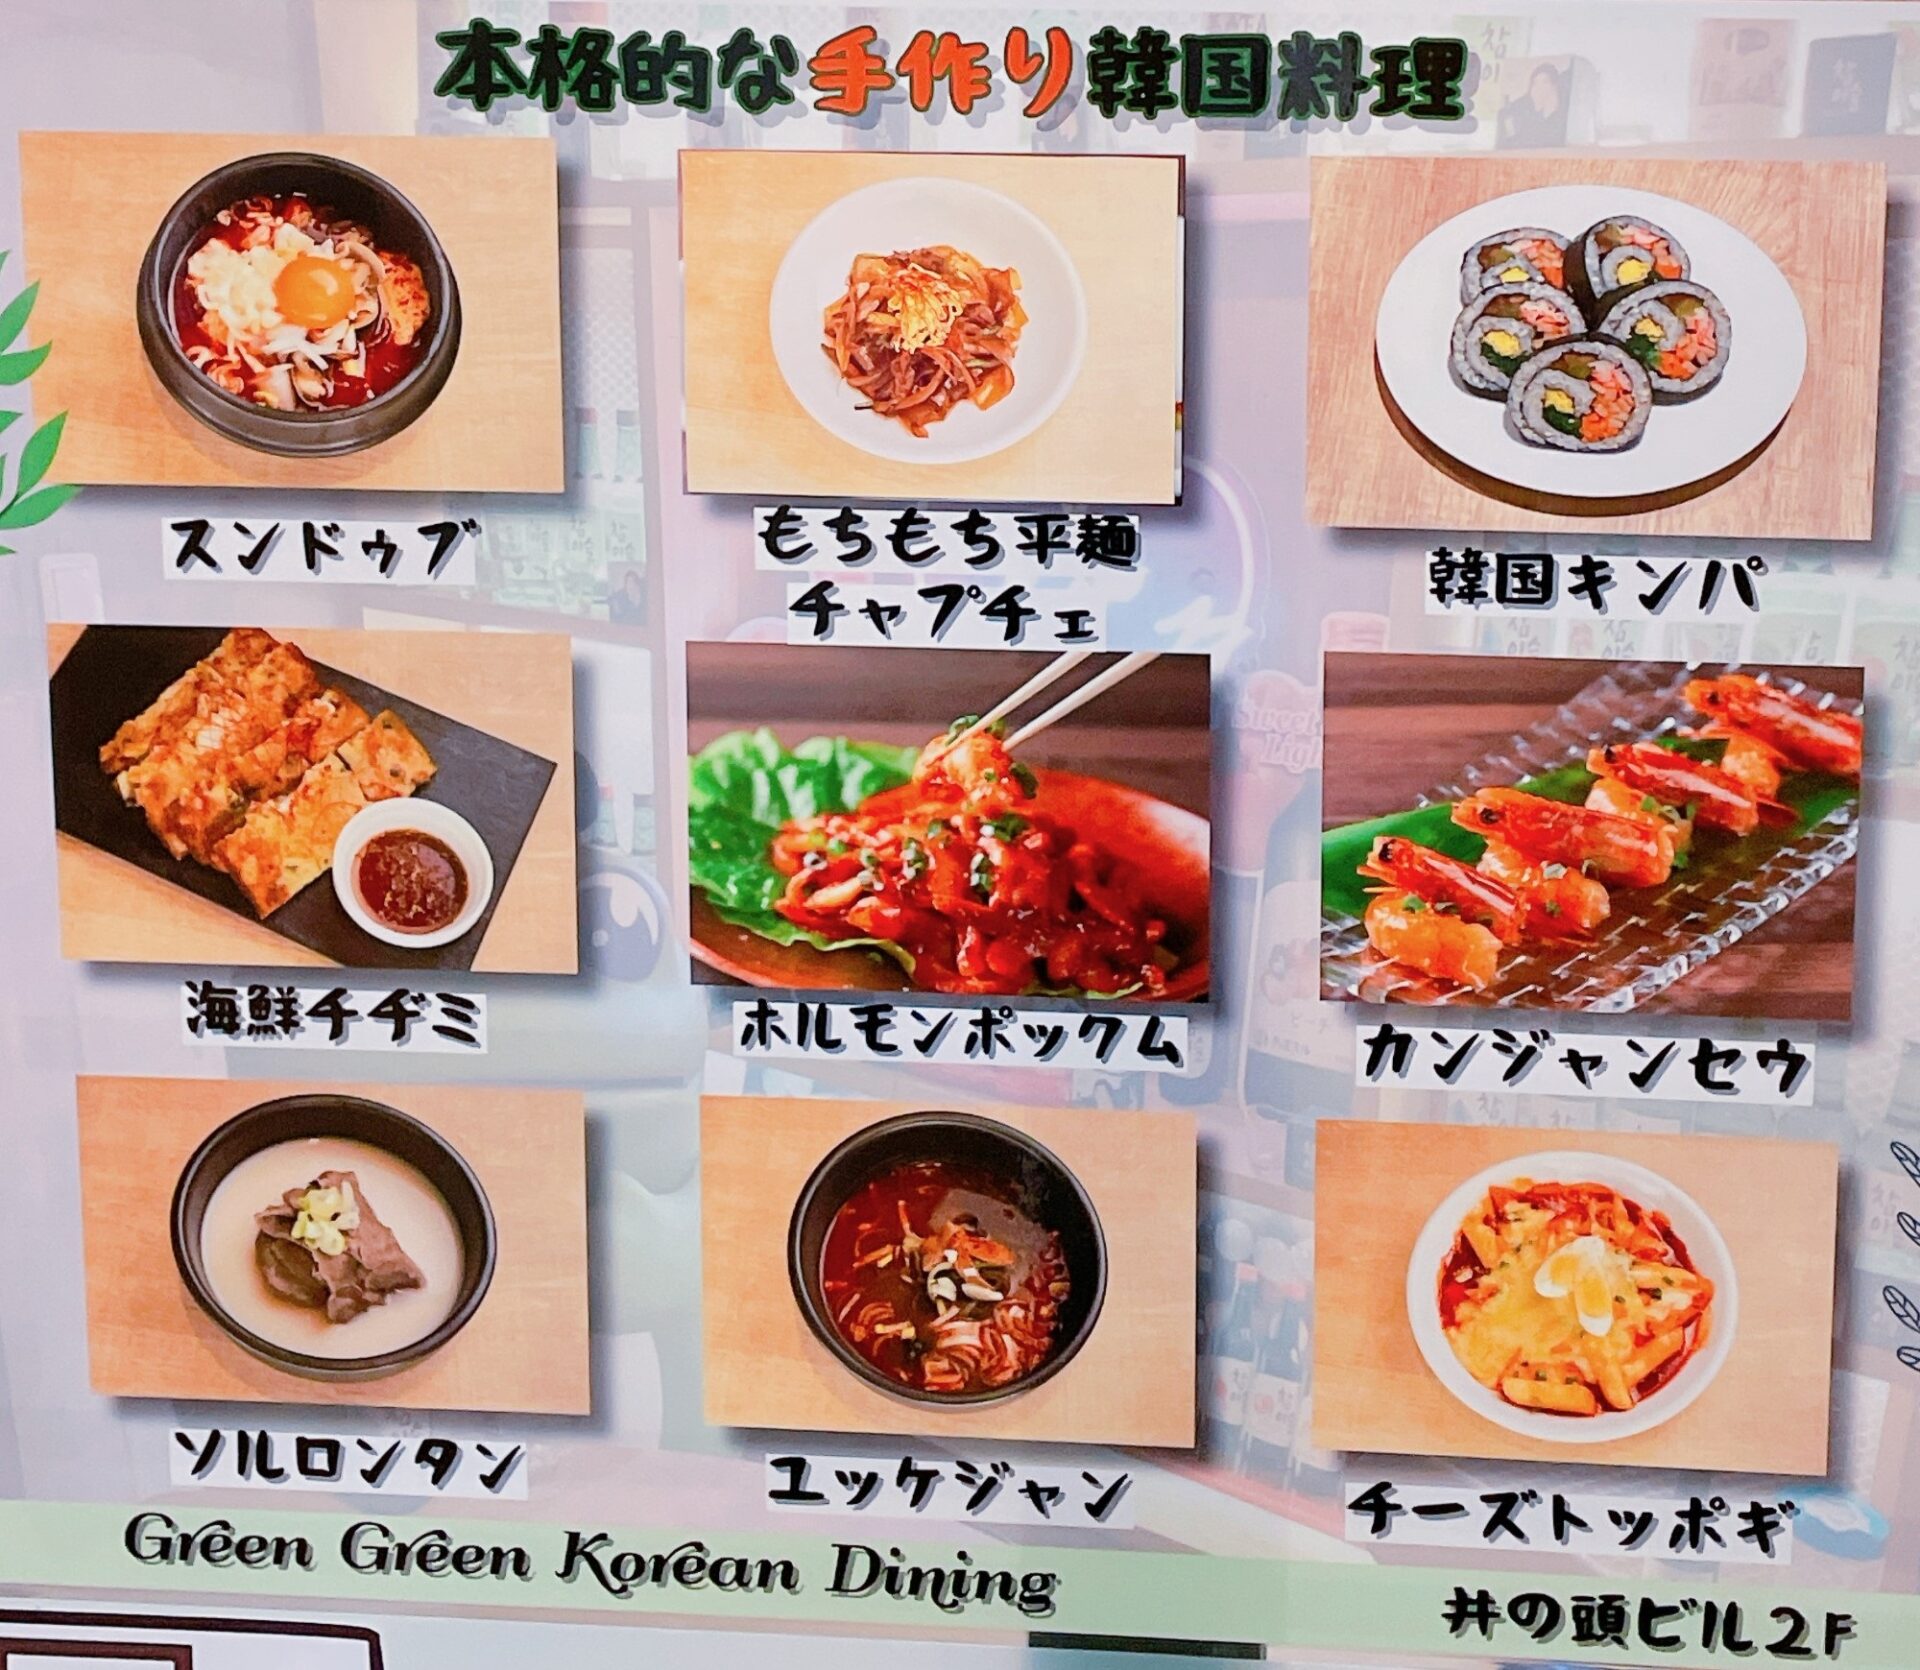 吉祥寺の韓国料理「Green Green（グリーン グリーン）」のメニュー